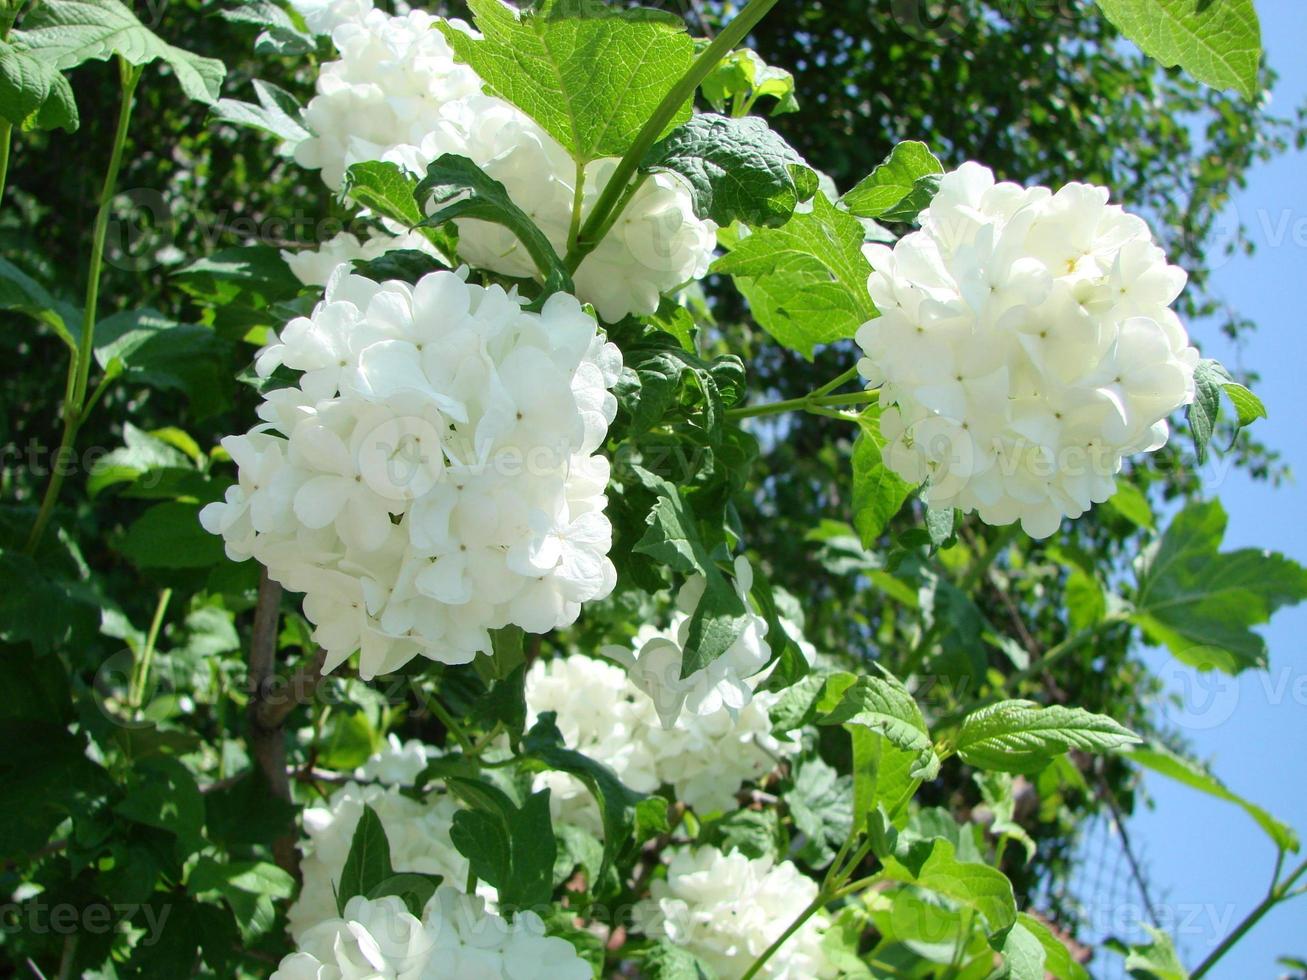 viburnum buisson décoratif à fleurs blanches - boule de neige dans le jardin photo